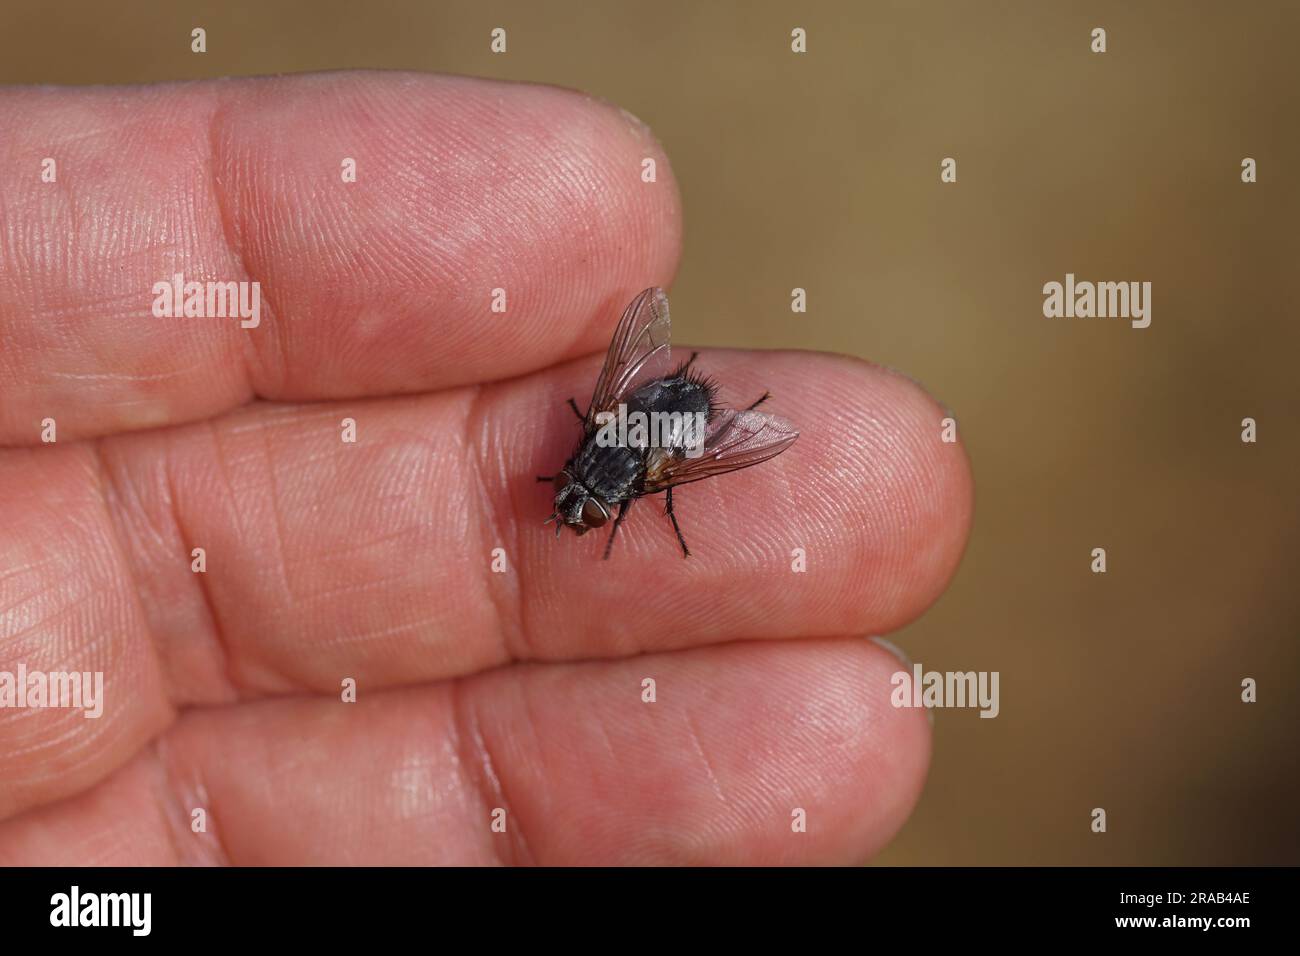 Weibliche tachinide Fliege Blepharipa pratensis ruht auf einer Hand. Nicht beißen! Synonym Panzeria rudis. Unterfamilie Exoristinae, Stamm Goniini, Familie Tachinidae Stockfoto